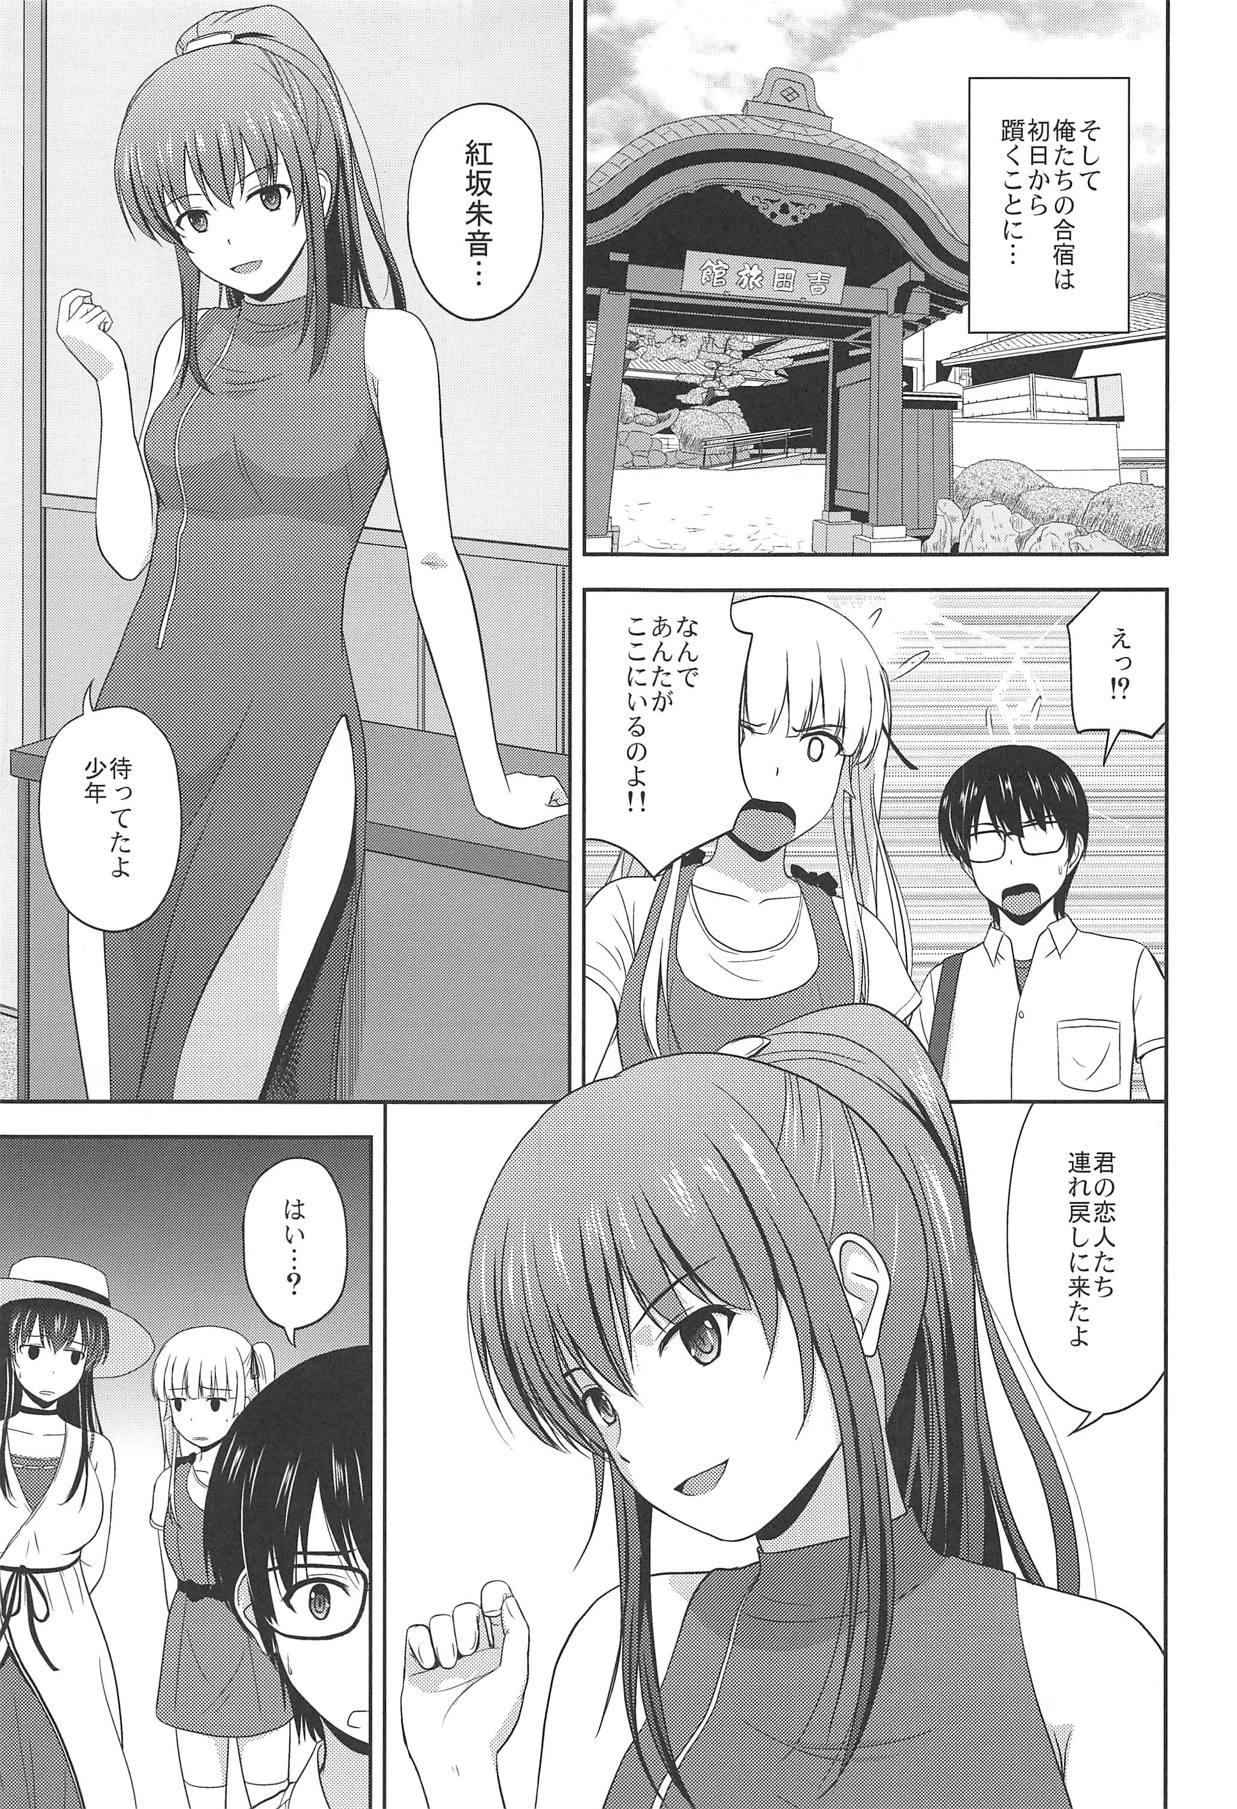 Uncut Saenai Utaha to Eriri no Rinri Shinsakai - Saenai heroine no sodatekata Analsex - Page 4